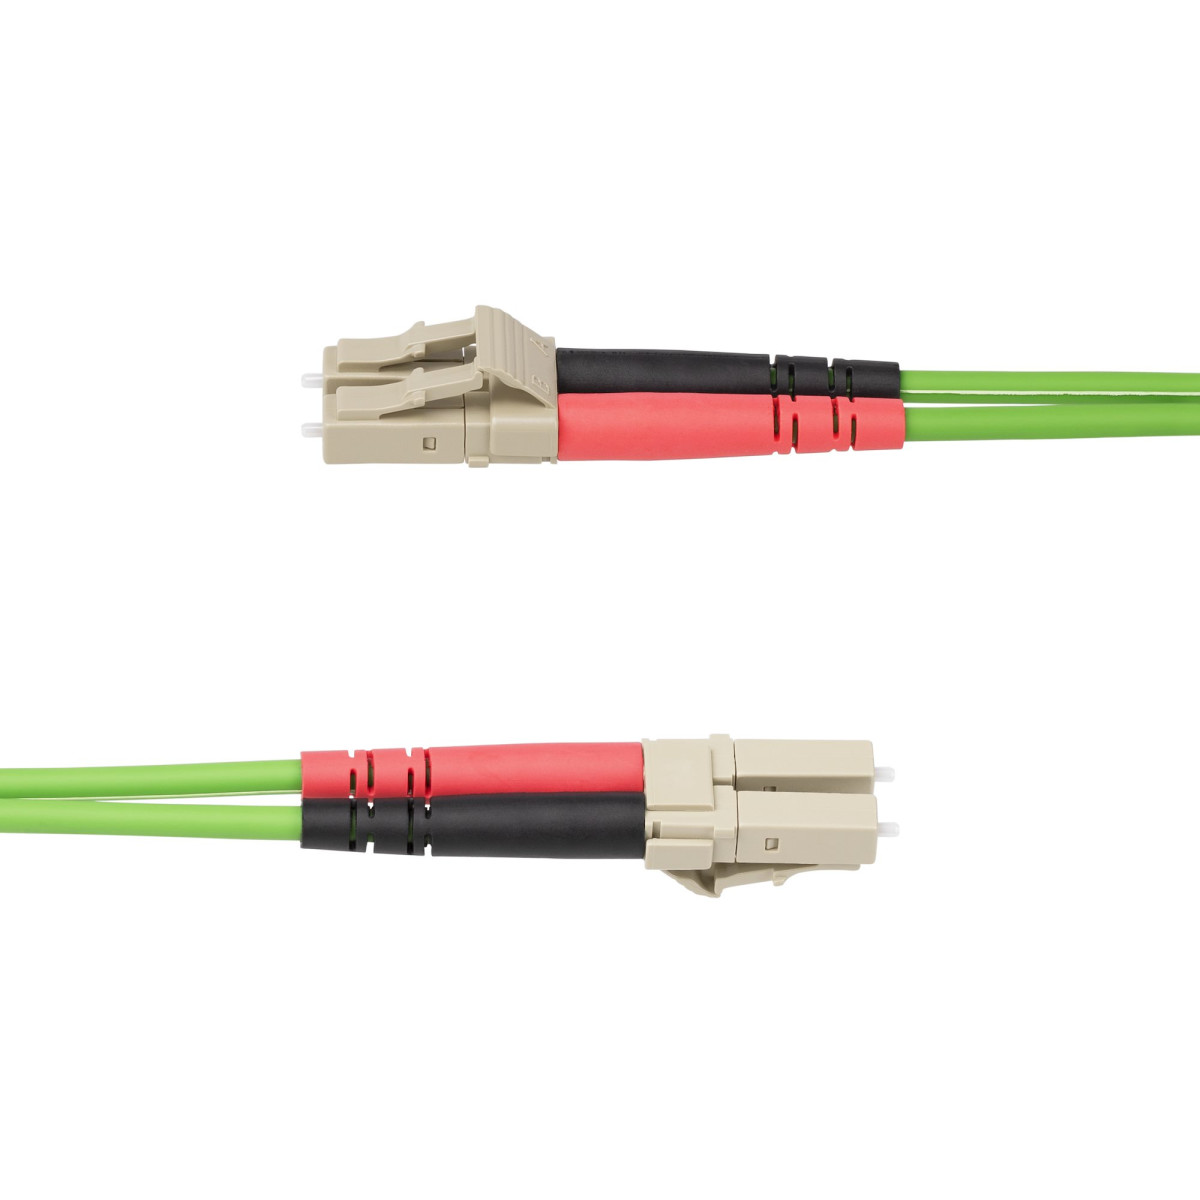 15m LC/LC OM5 Multimode Fiber Cable